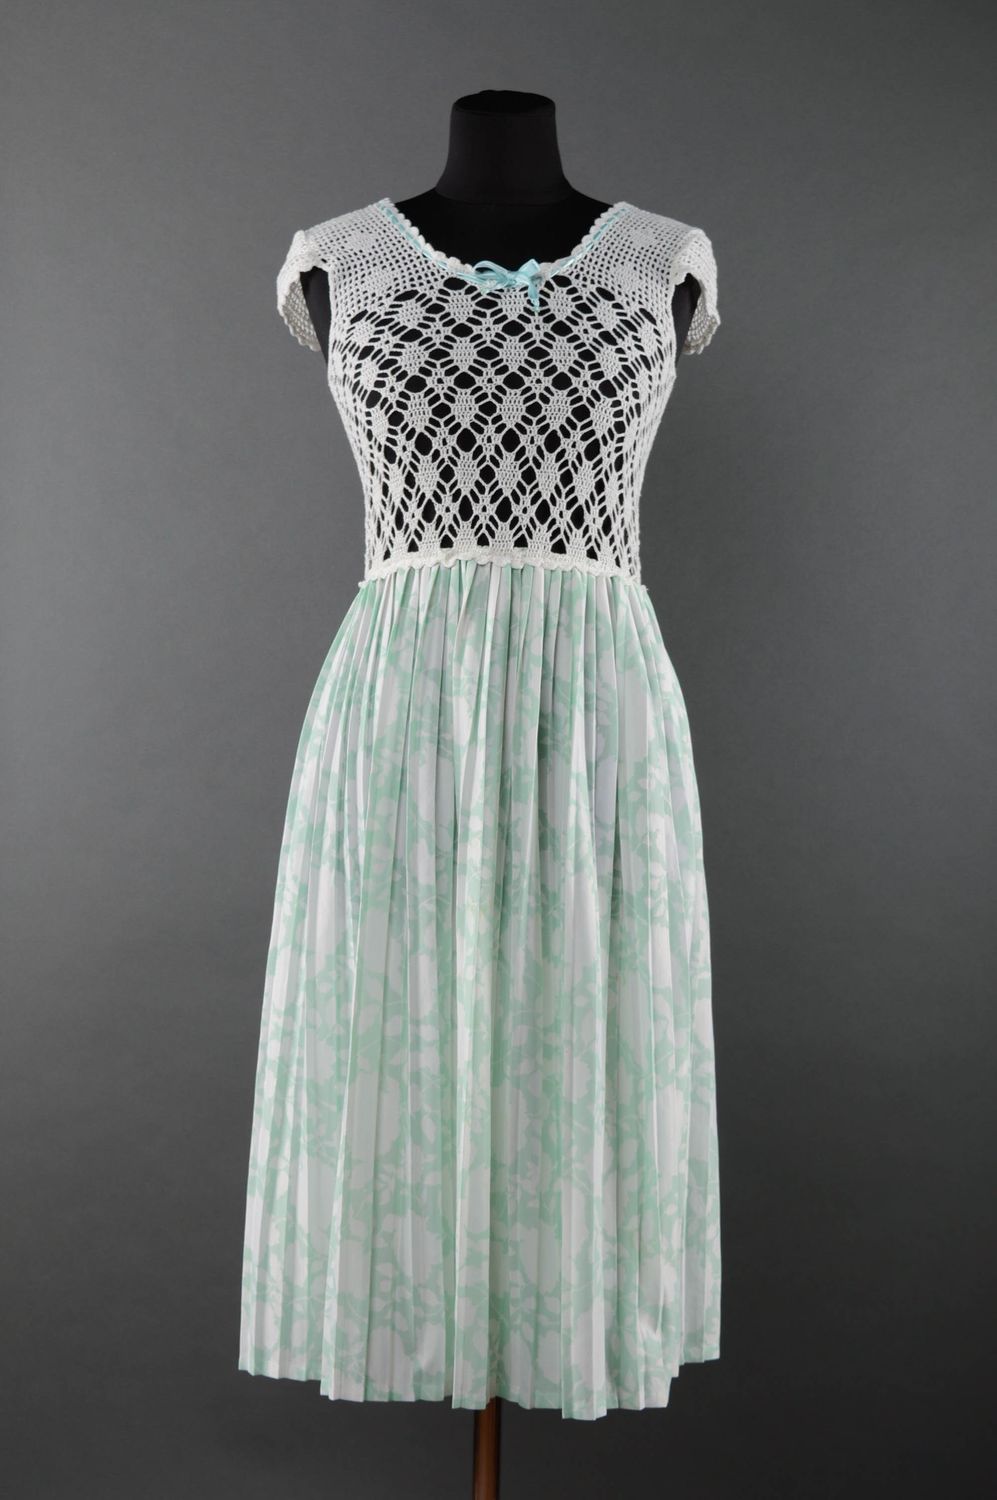 Вязаное платье ручной работы из хлопка и синтетики длинное светлое фото 1